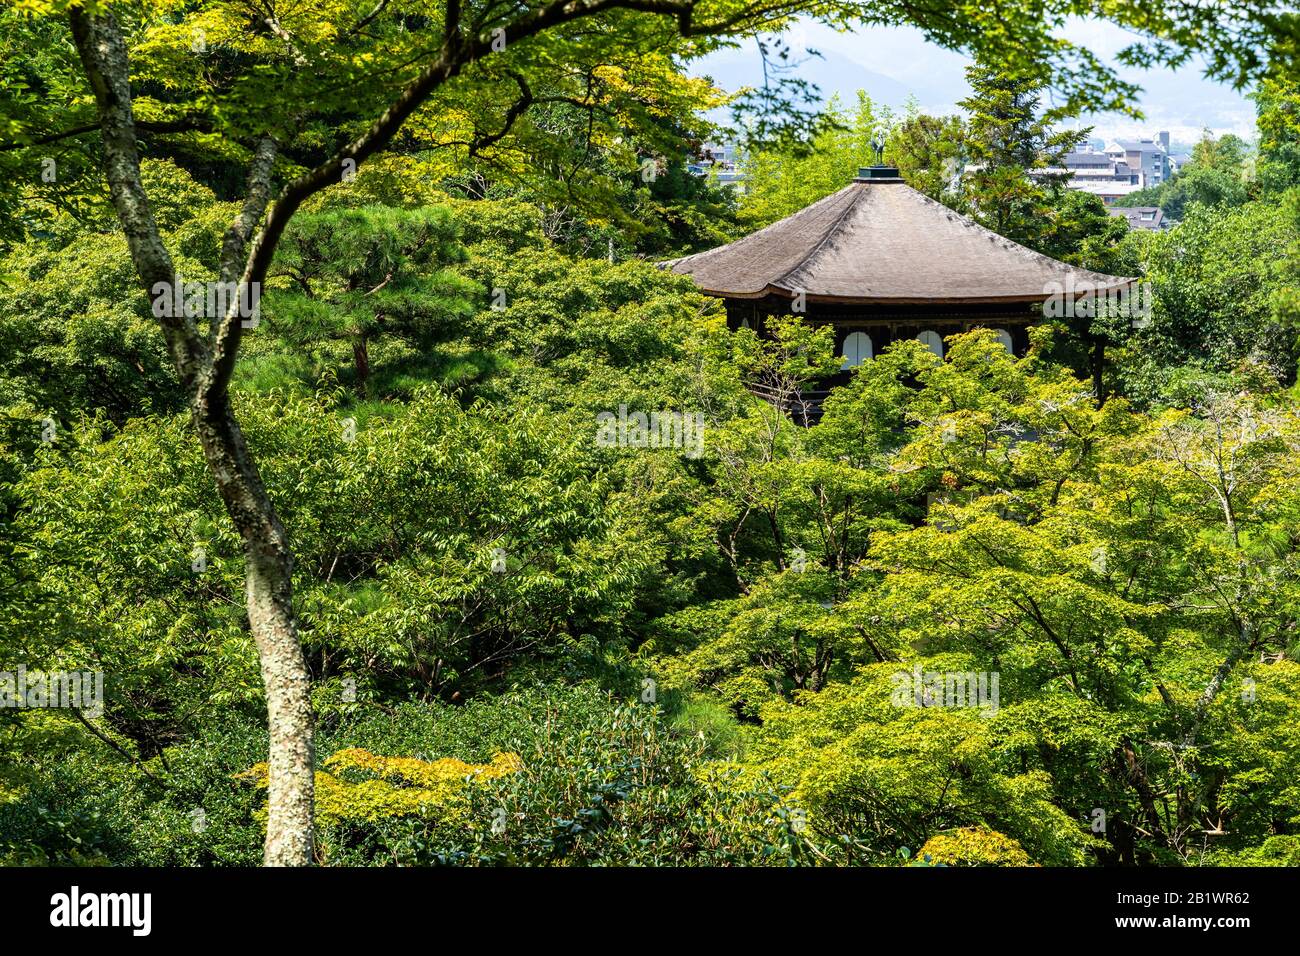 Le bâtiment principal (Kannon Hall) du temple de Ginkakuji (Pavillon d'argent) émergeant entre les arbres, Kyoto, Japon Banque D'Images